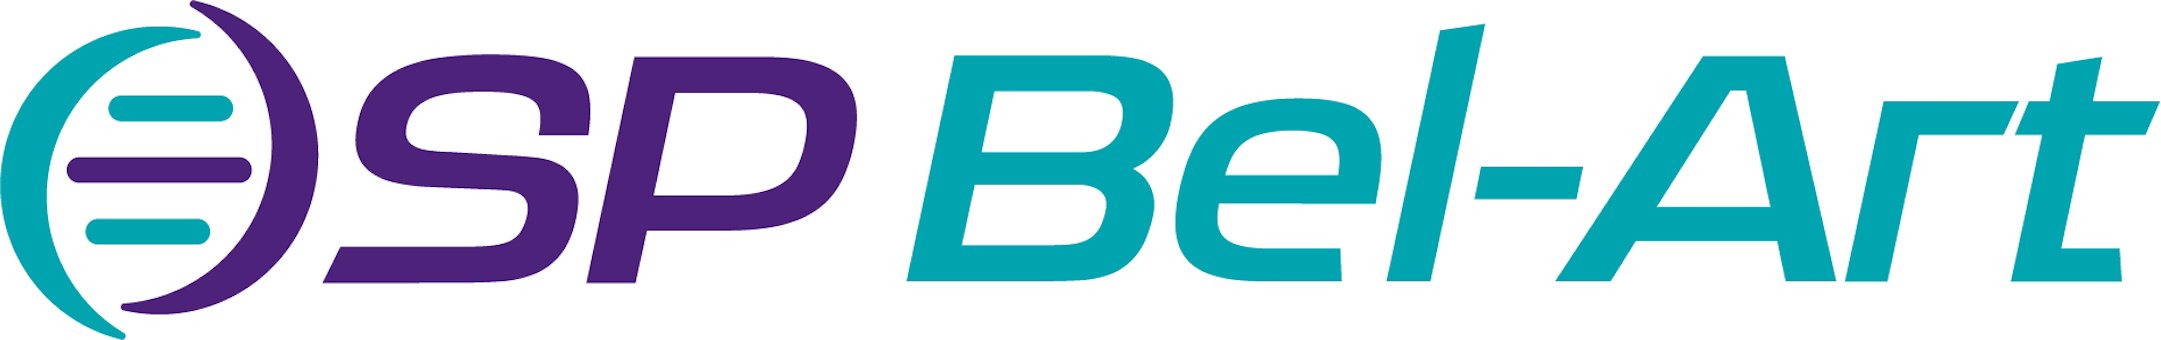 Bel-Art Jerrican Replacement Part Pack - BEL; BEL-80010-0711